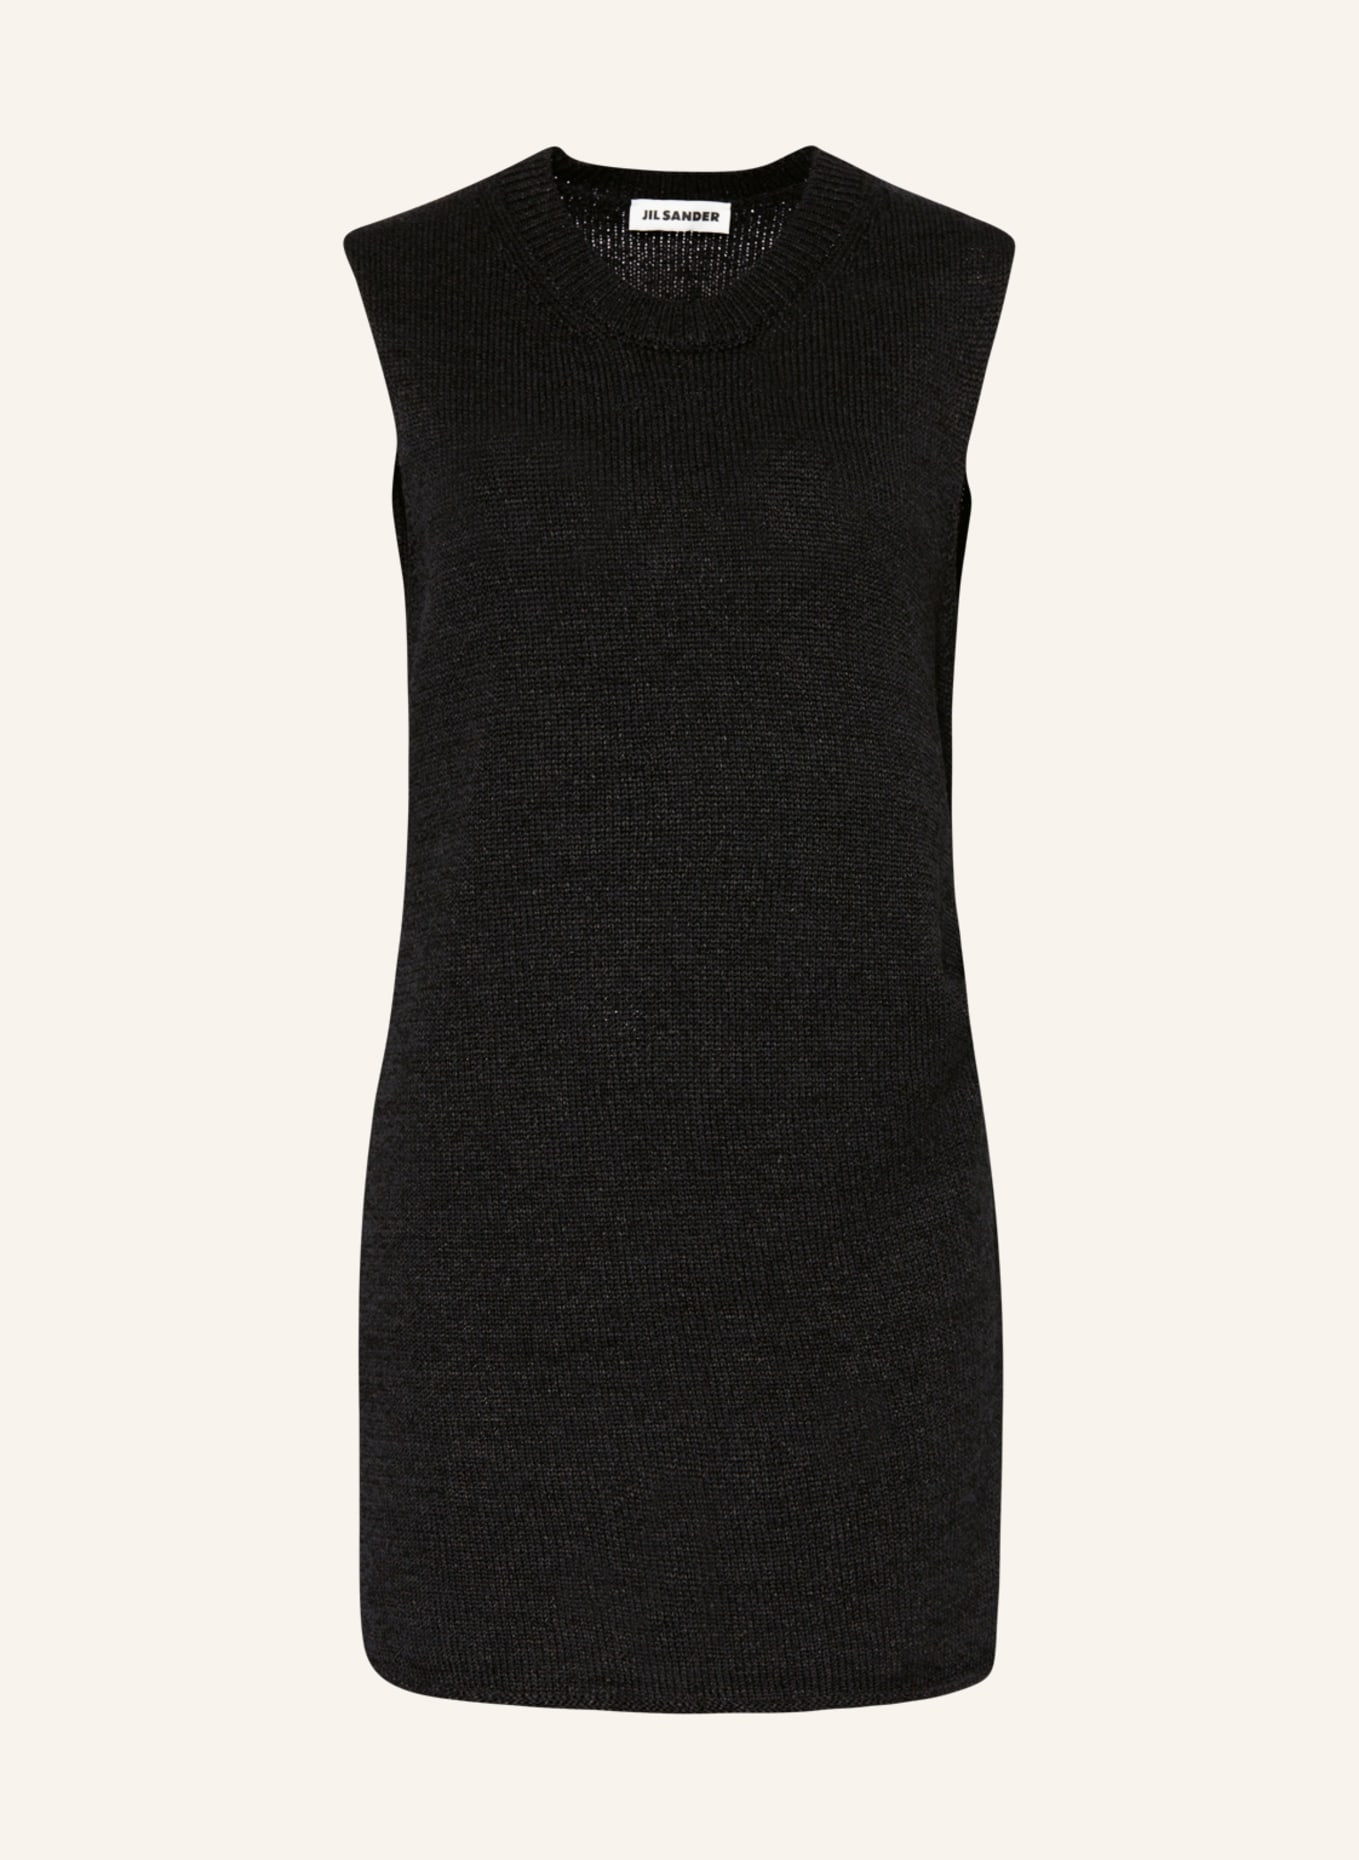 JIL SANDER Knit top, Color: BLACK (Image 1)